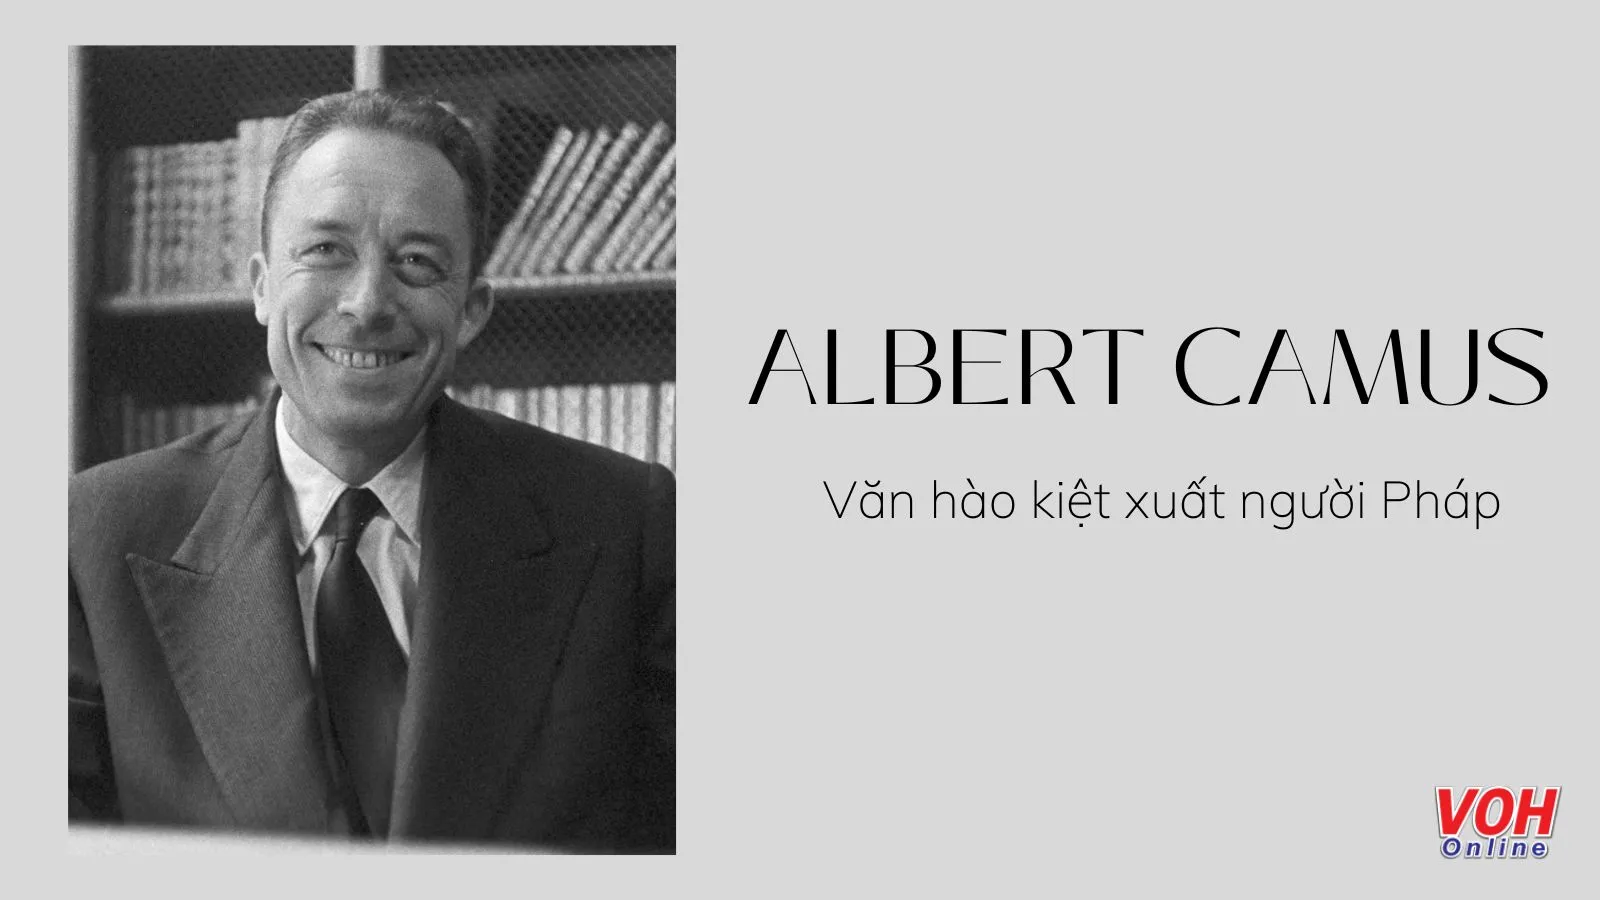 Albert Camus là ai? 20 câu nói hay của nhà văn hiện sinh Pháp Albert Camus